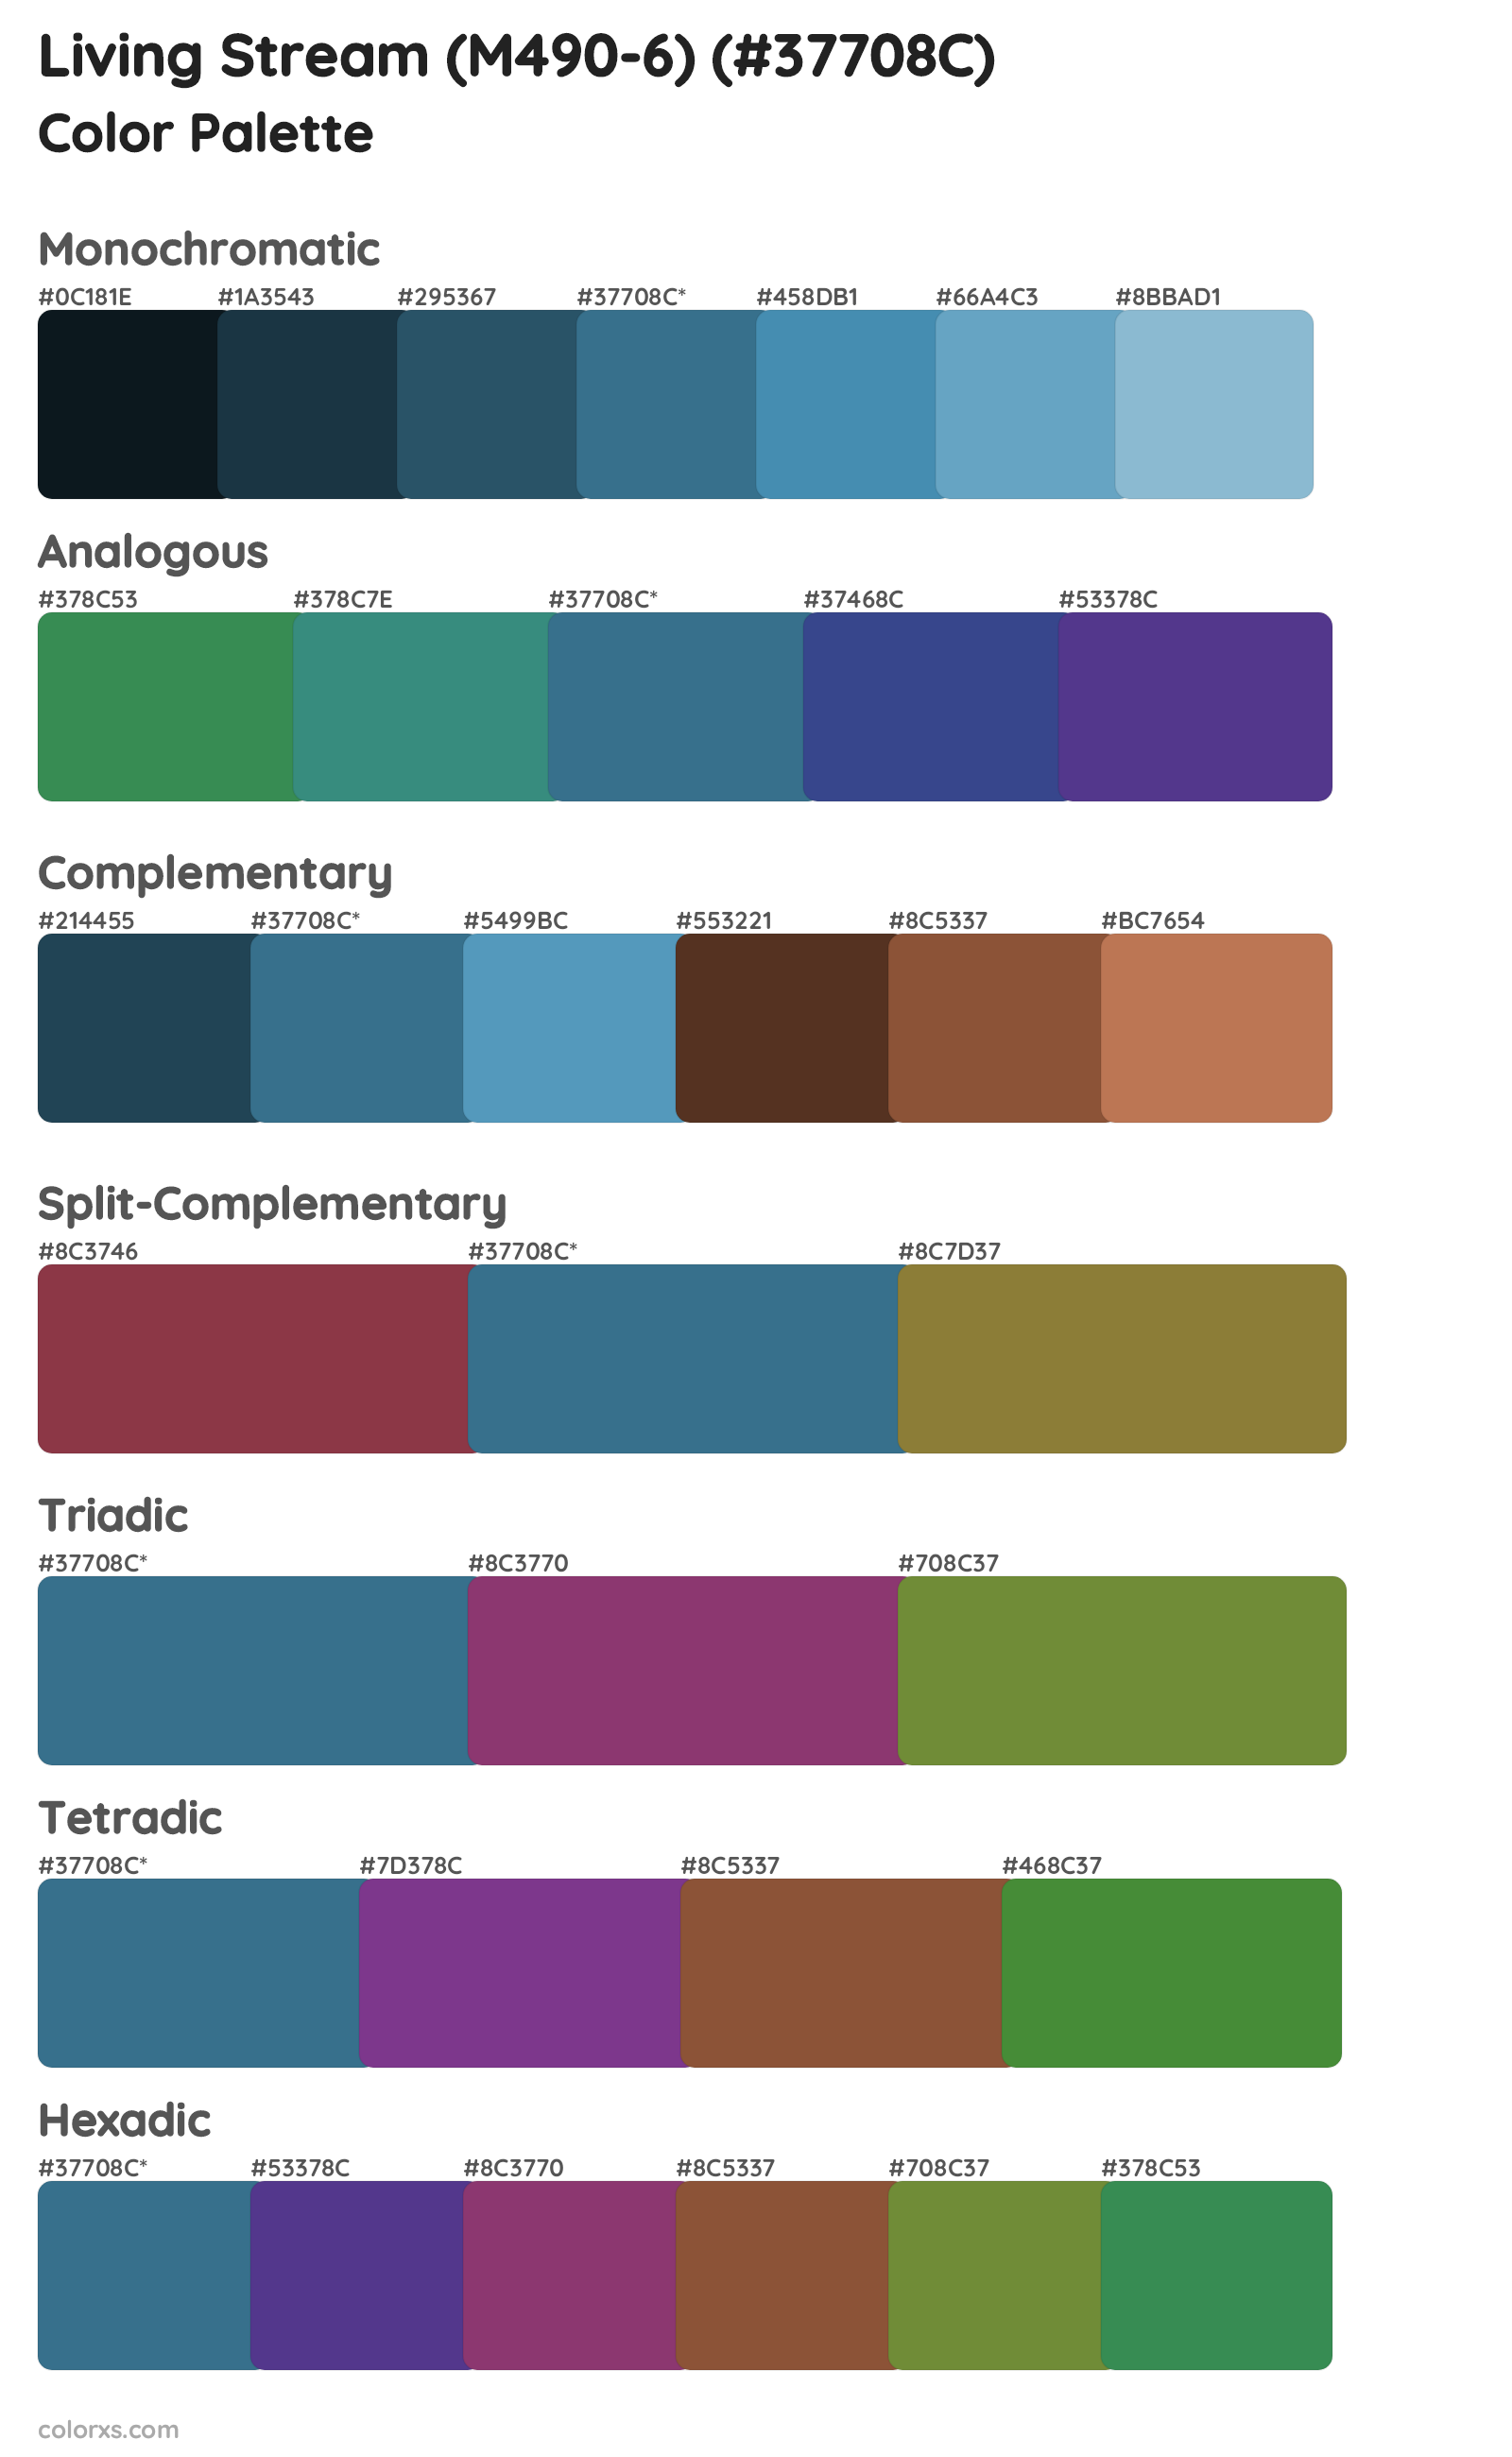 Living Stream (M490-6) Color Scheme Palettes